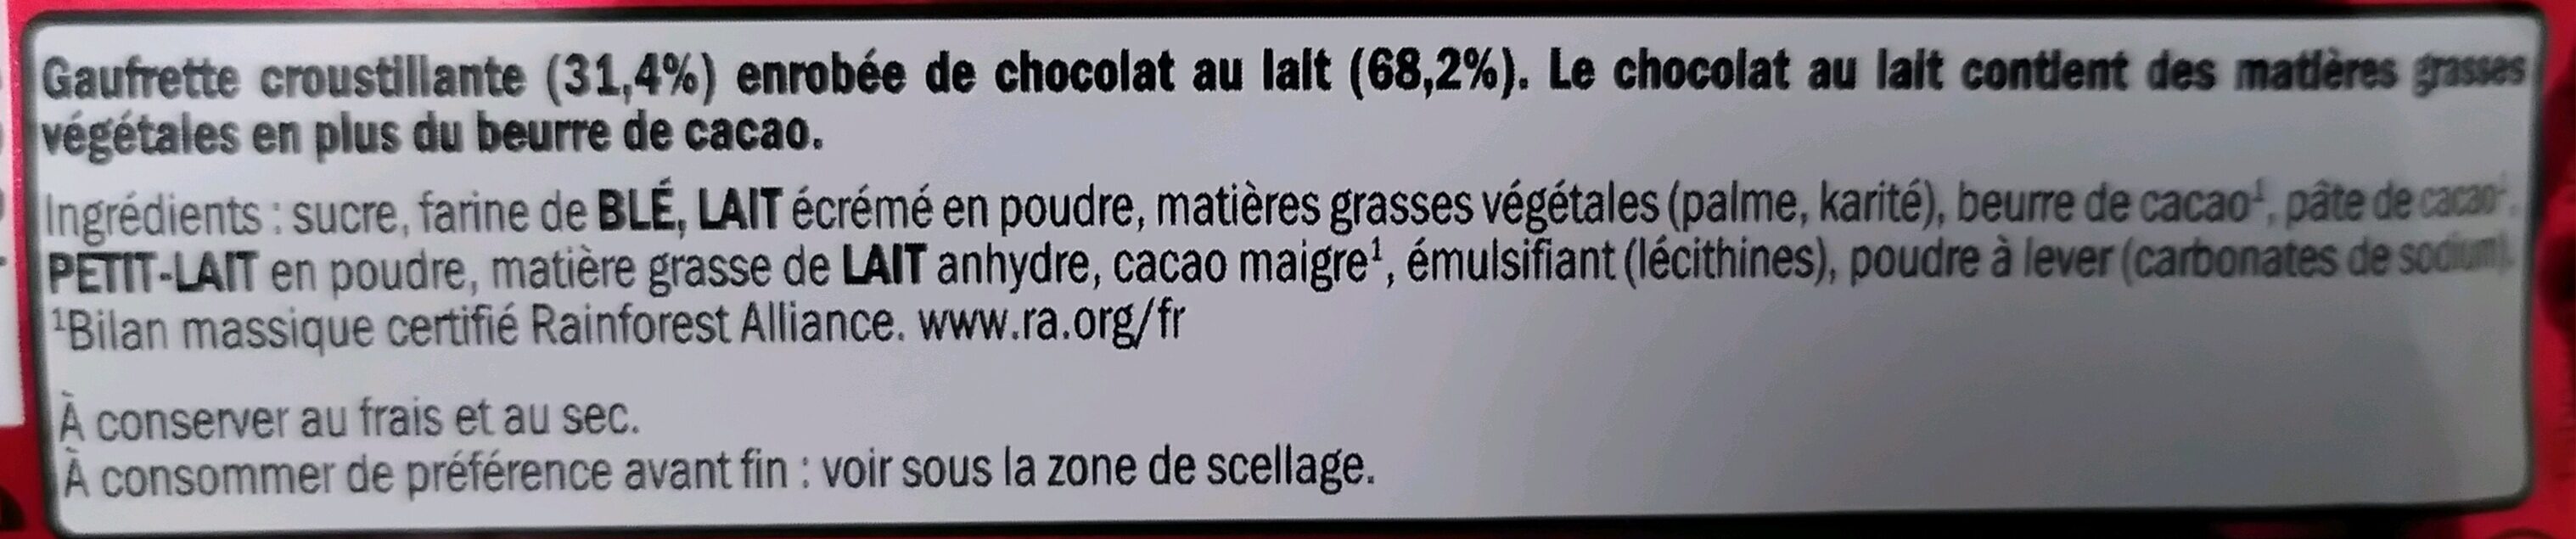 KitKat 4 Chocolat au Lait - Ingredientes - fr